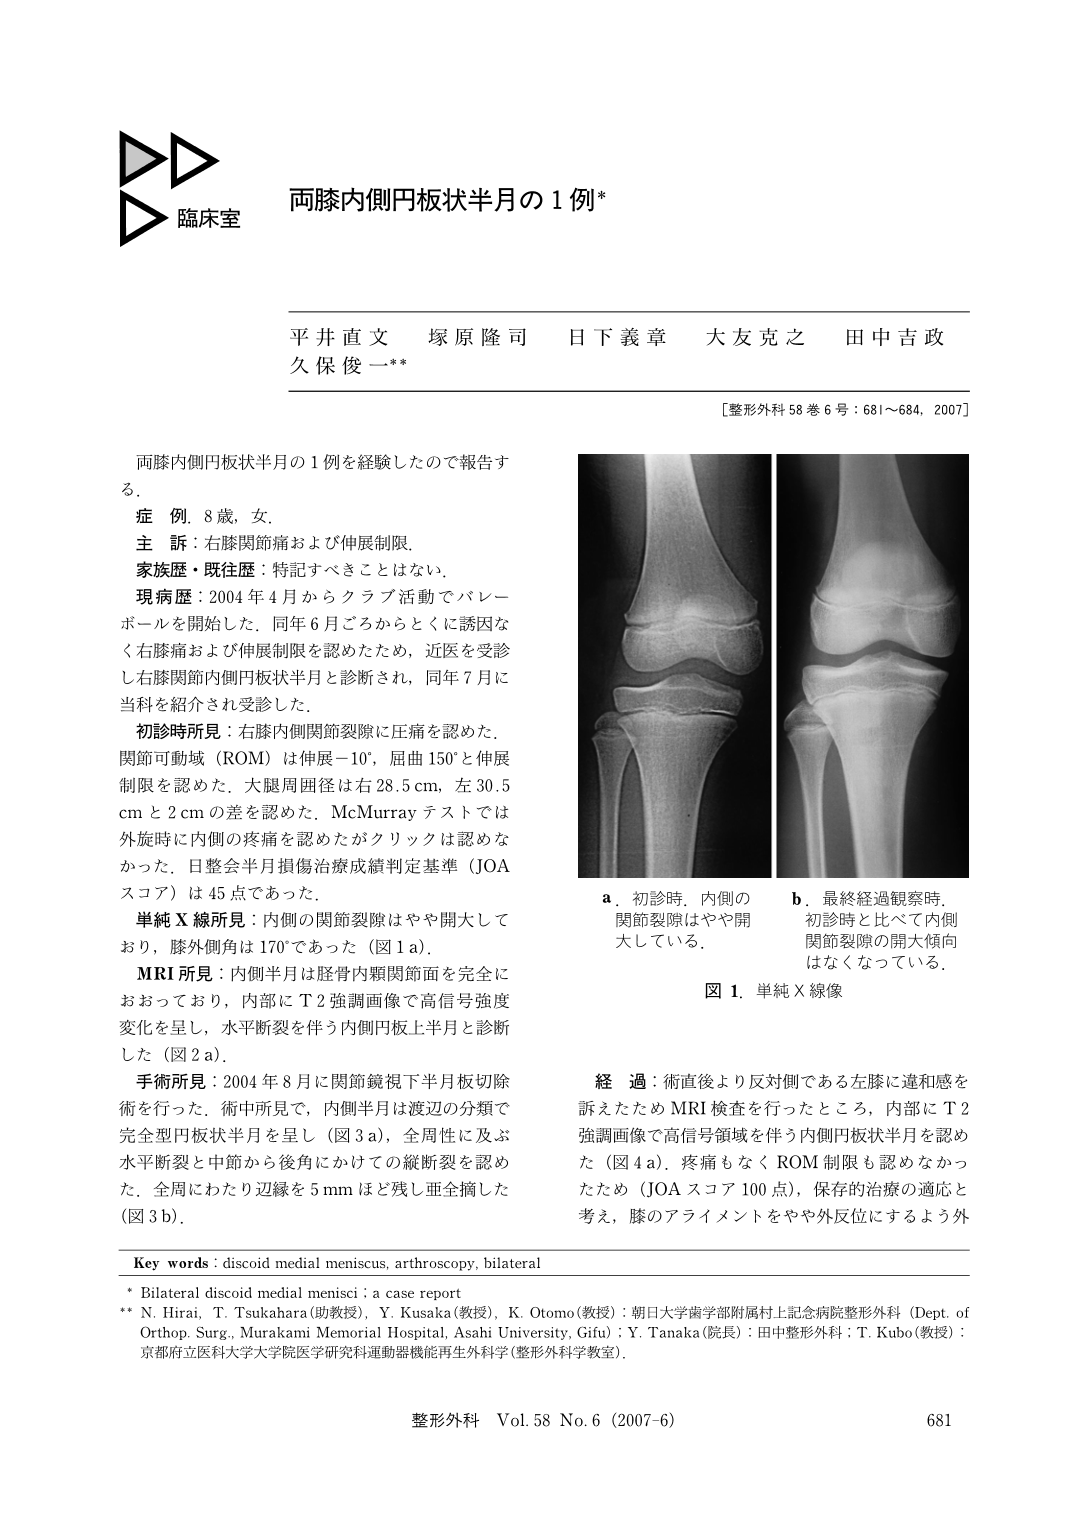 両膝内側円板状半月の1例 臨床雑誌整形外科 58巻6号 医書 Jp